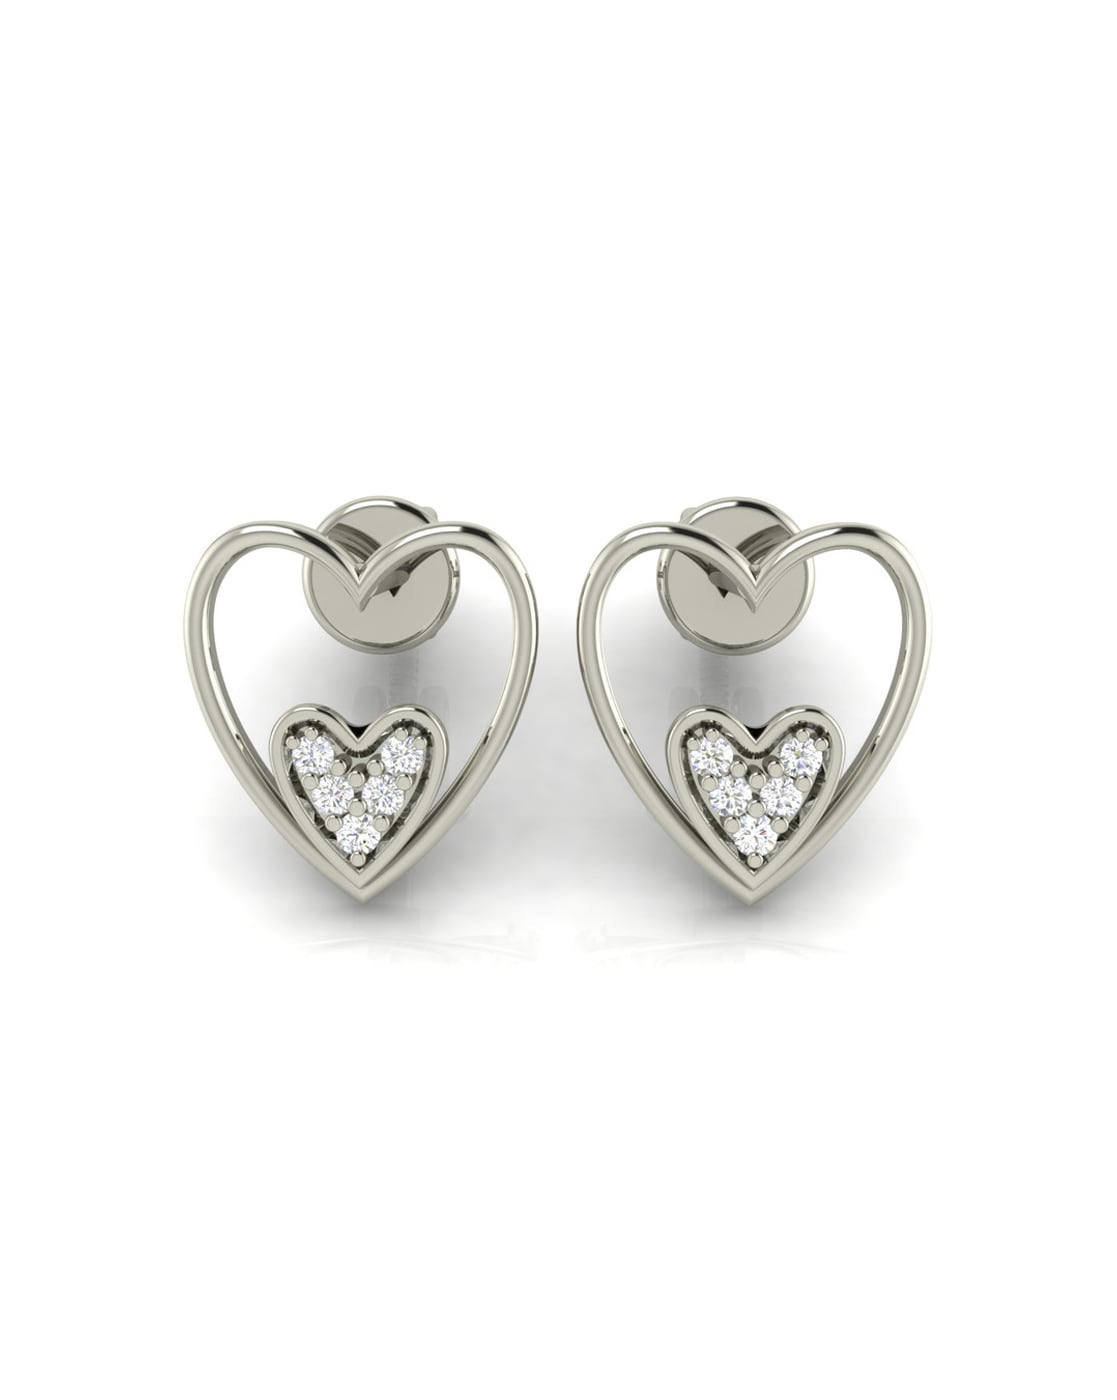 Round Brilliant 1.00 ctw VS2 Clarity, I Color Diamond 14kt White Gold  Earrings | Costco